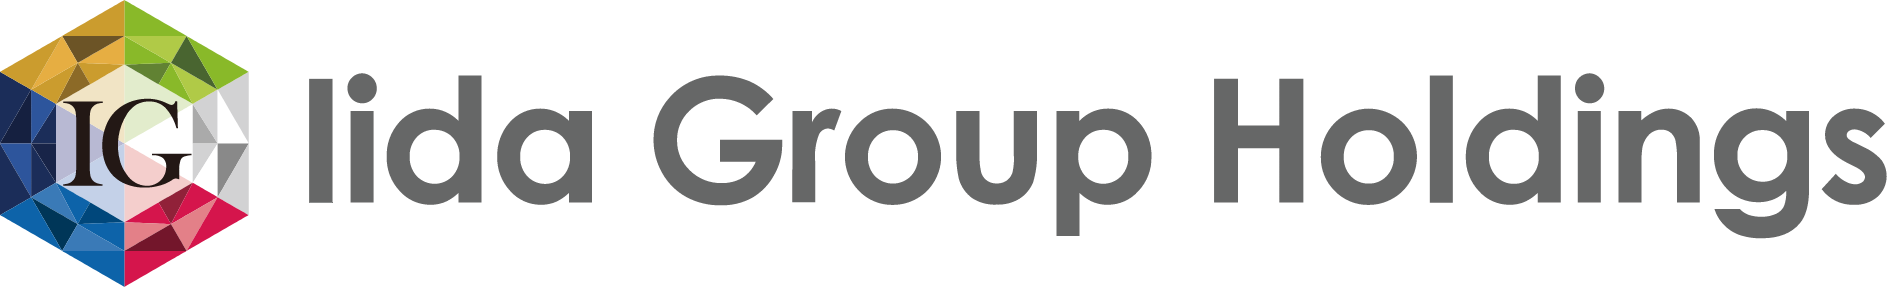 Iida Group logo large (transparent PNG)